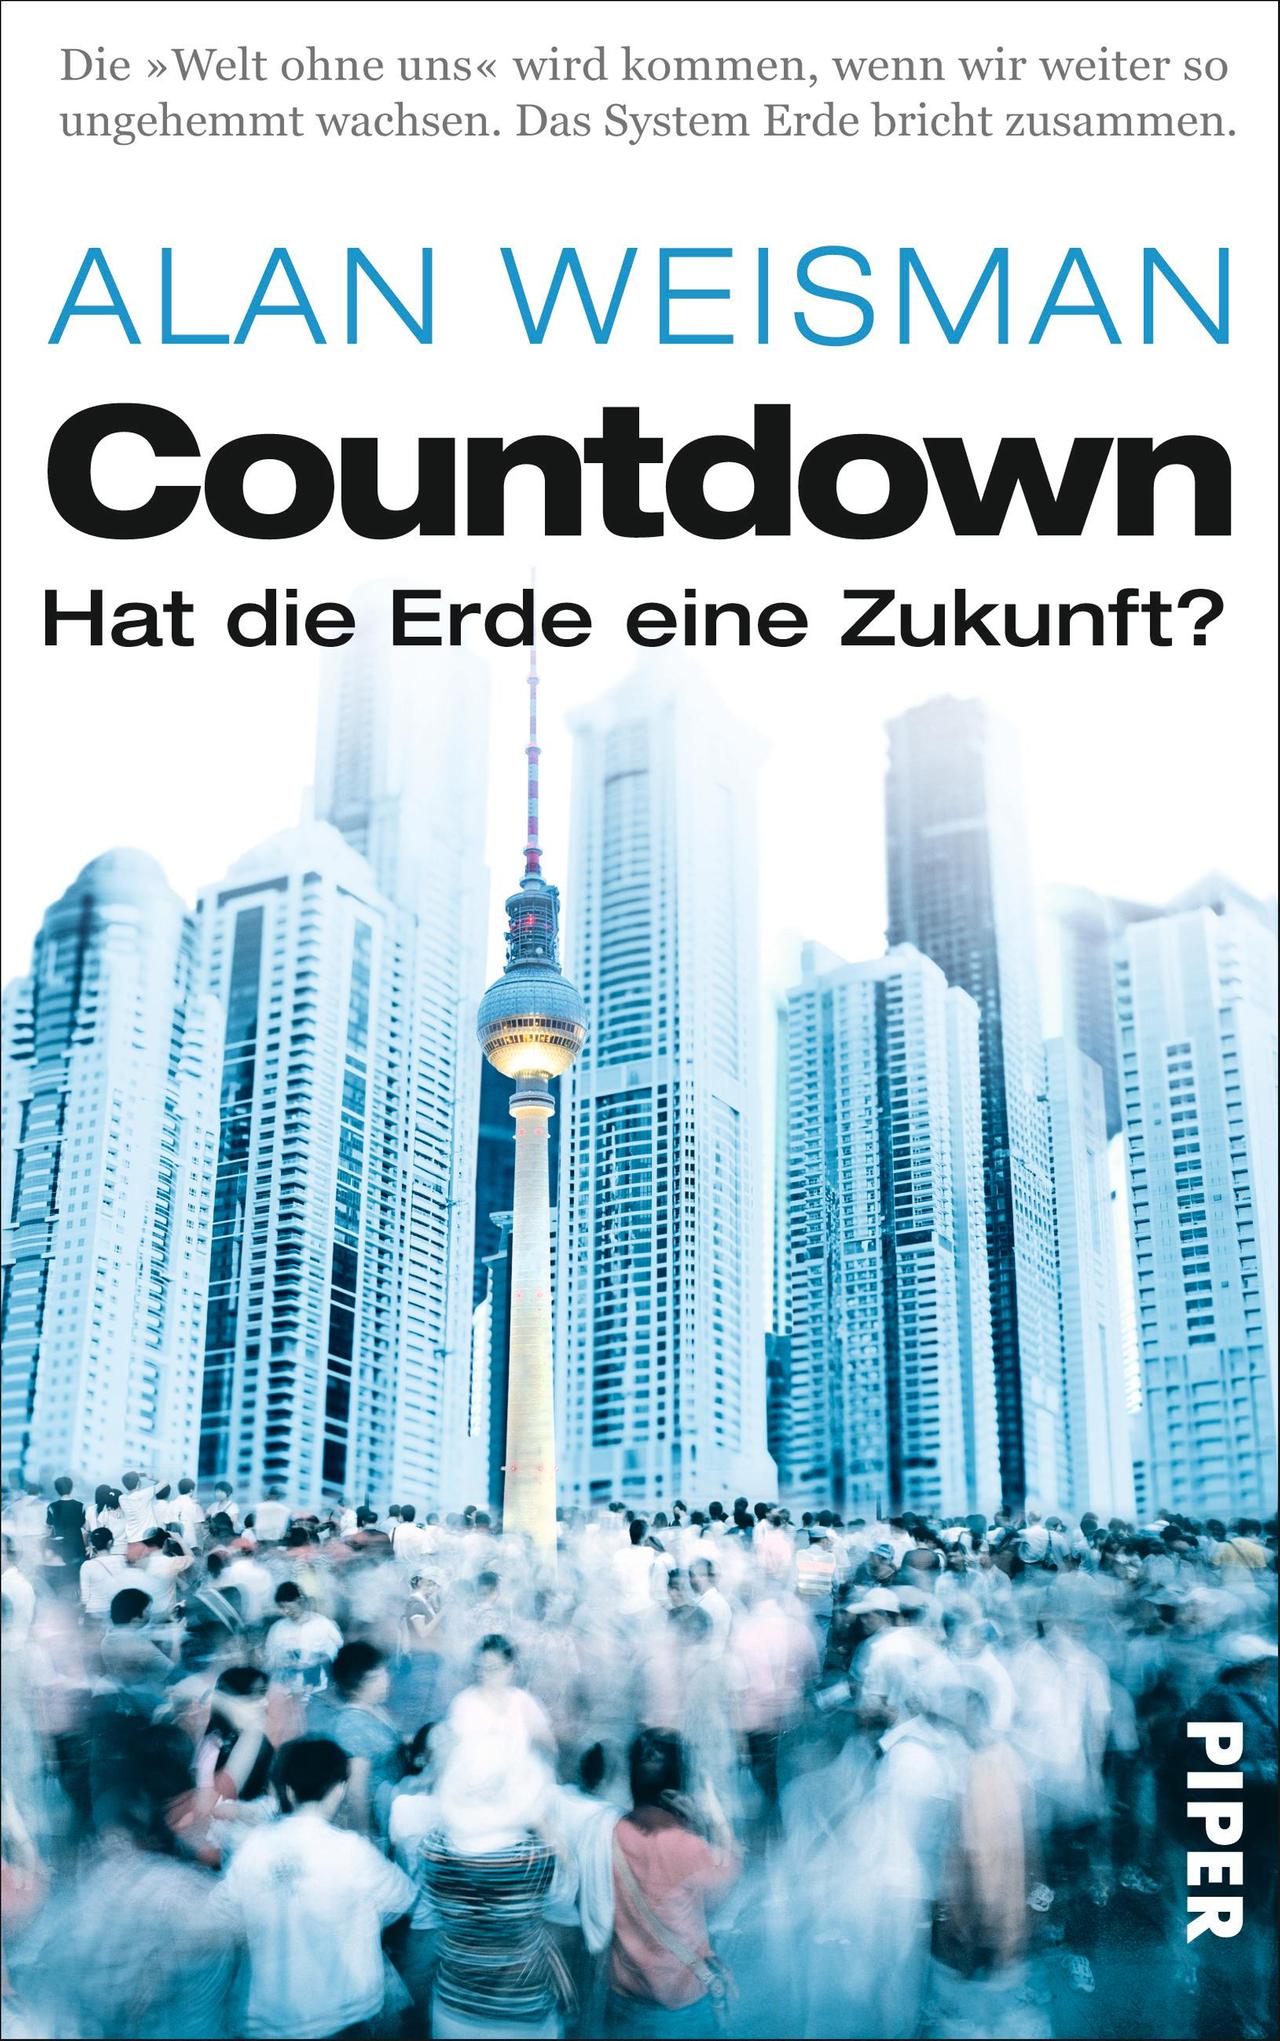 Countdown - Hat die Erde eine Zukunft? Autor: Alan Weisman, übersetzt von Ursula Pesch und Werner Roller 576 Seiten, Piper Verlag, 24,99 Euro ISBN: 978-3-492-05431-7